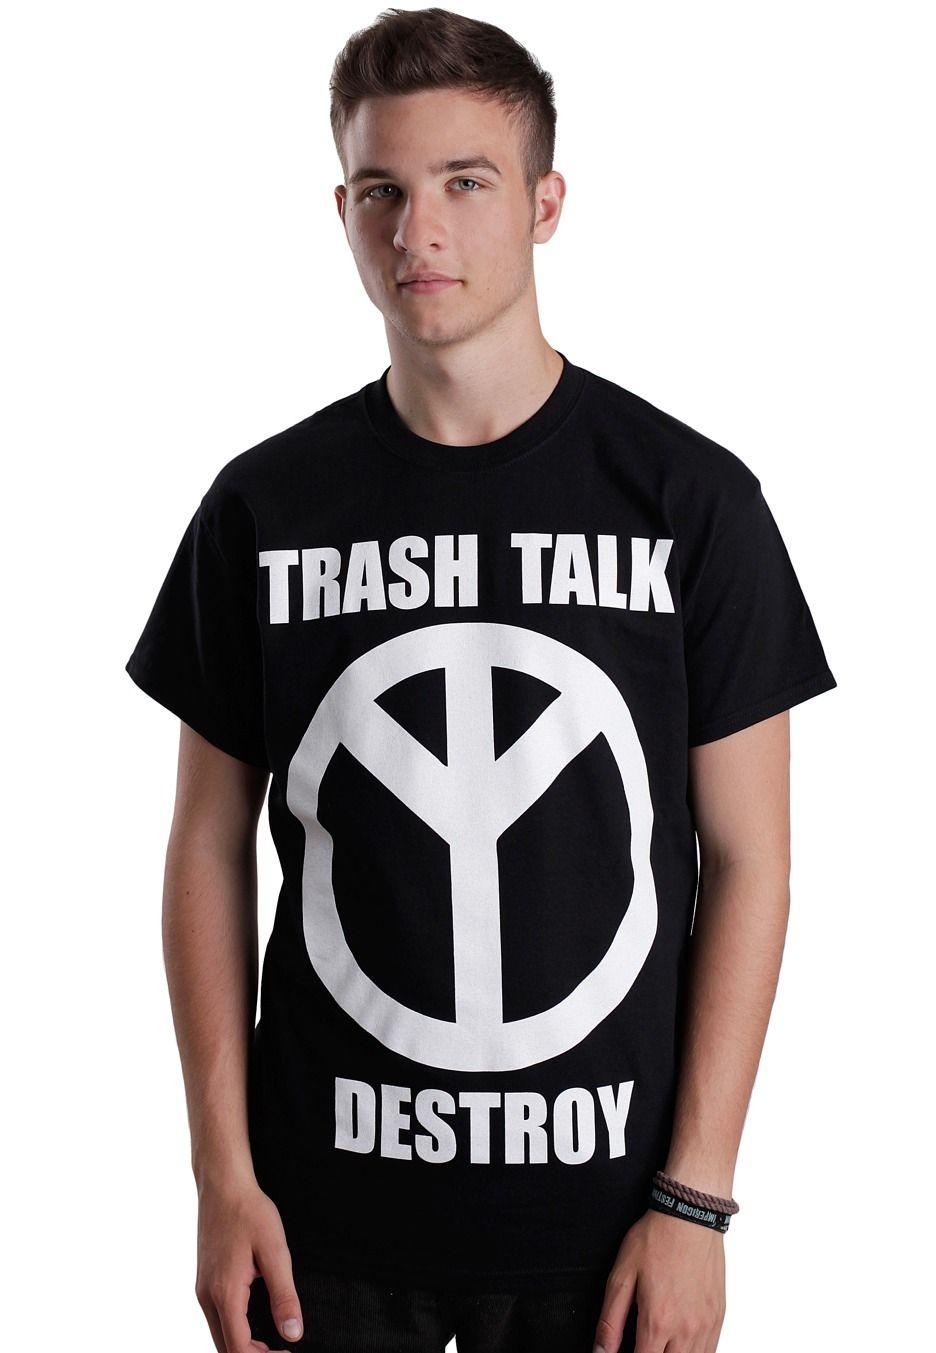 Trash Talk Logo - Trash Talk - White Destroy - T-Shirt - Impericon.com AU